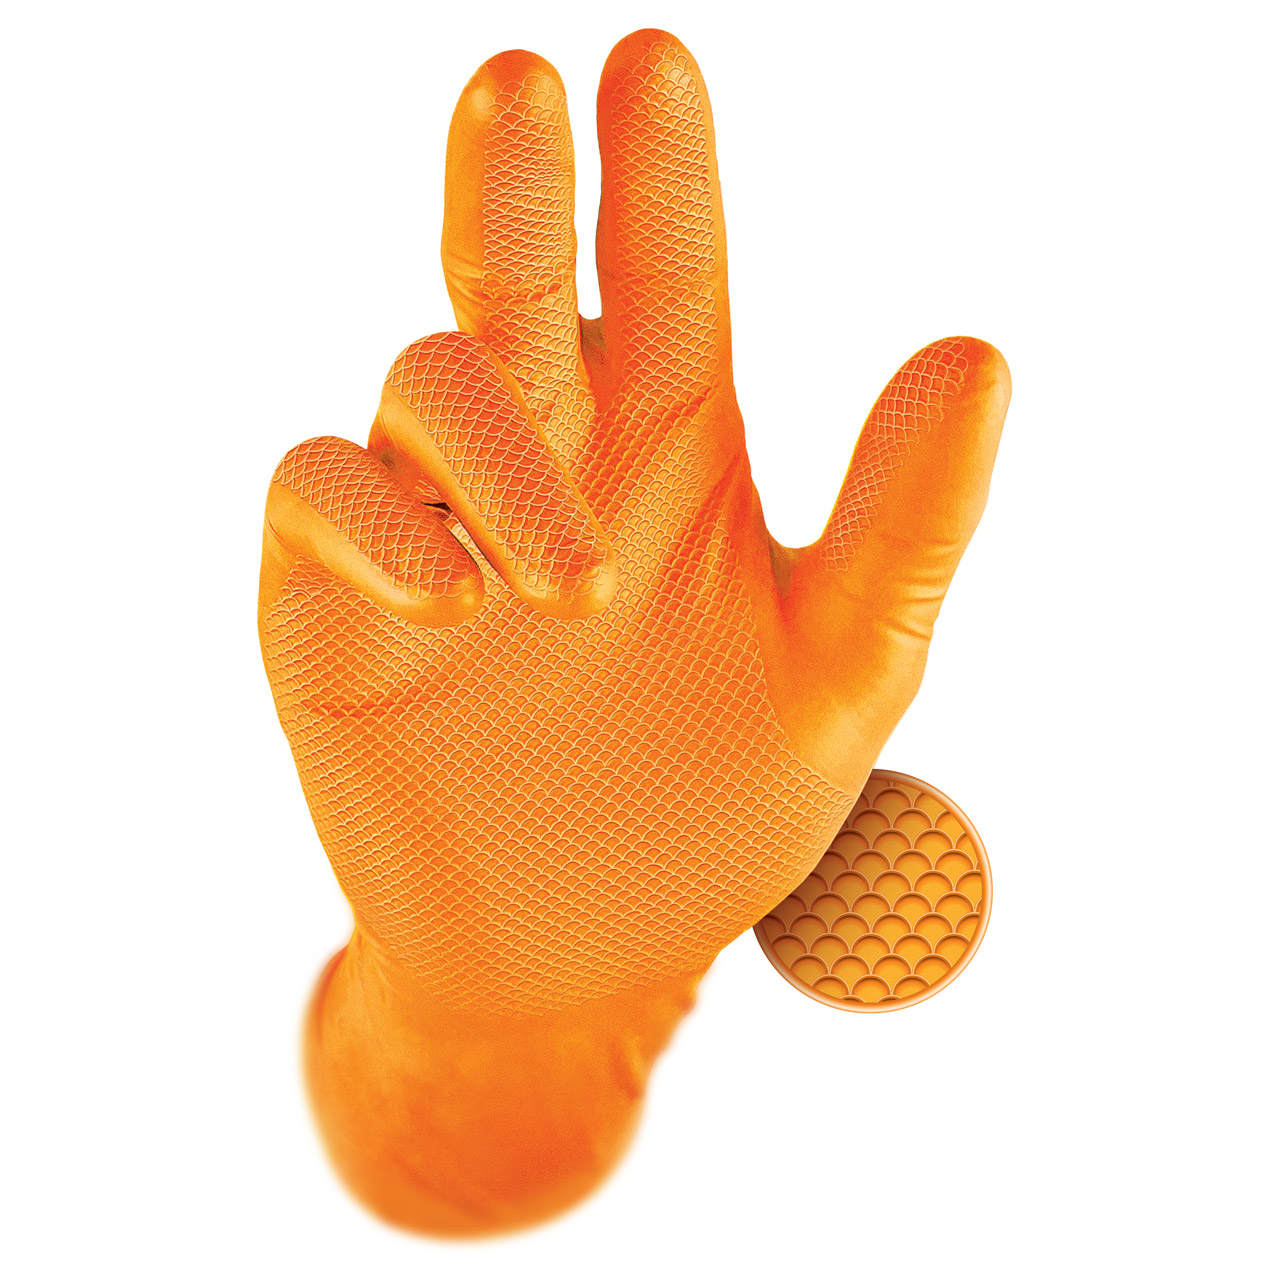 GRIPPAZ 246 Schutzhandschuhe NITRIL Handschuhe ORANGE Größe L (50 Stück)